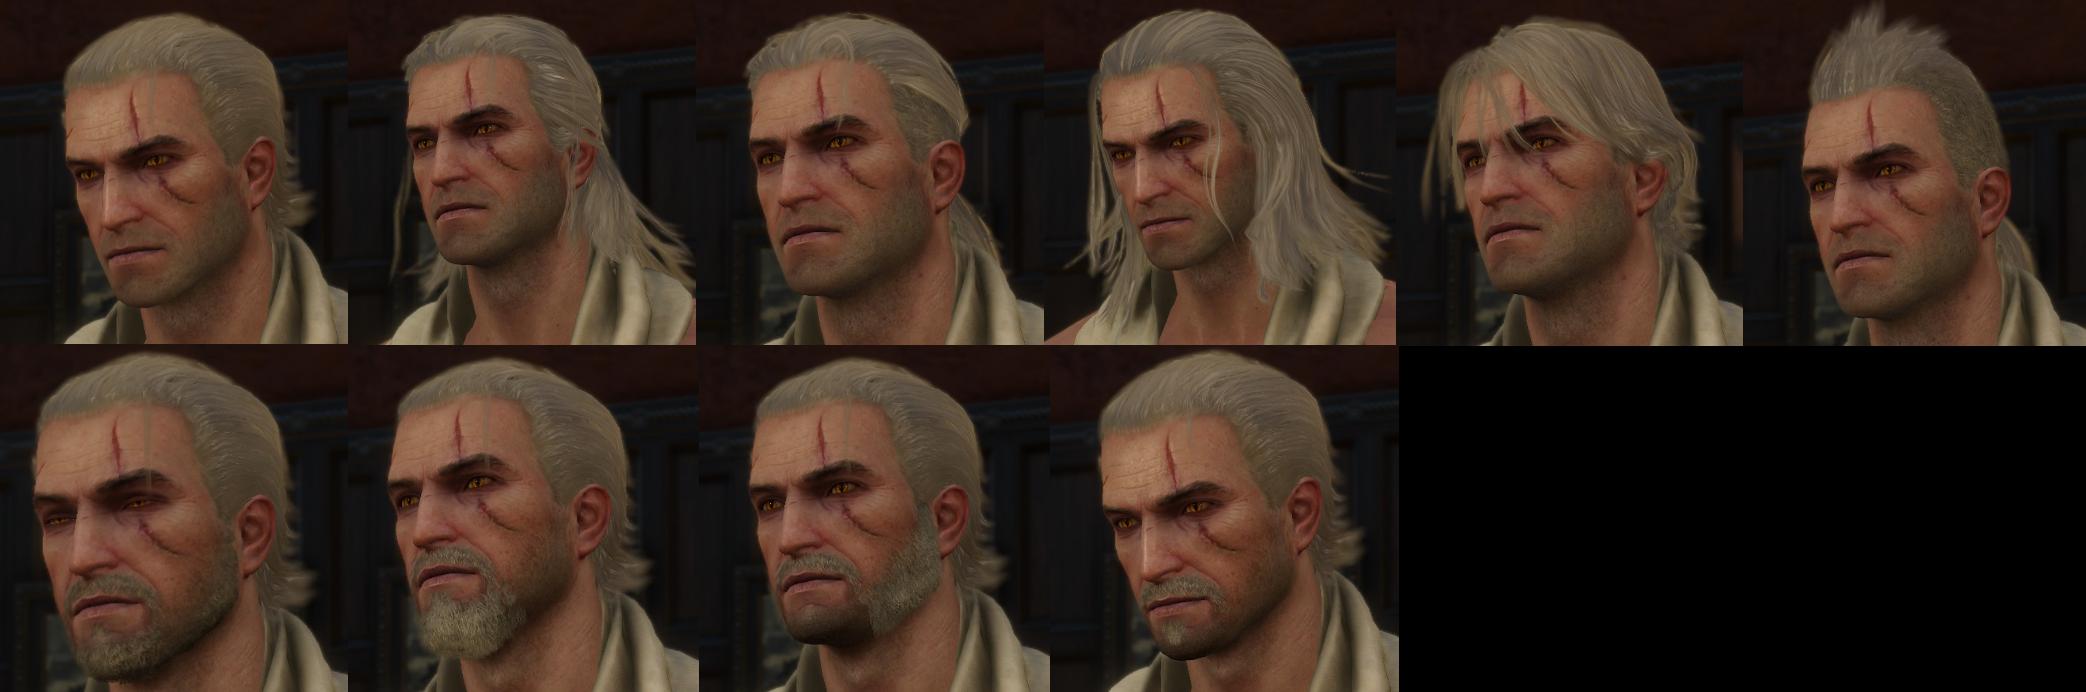 Geralt Haircut And Beard.jpg